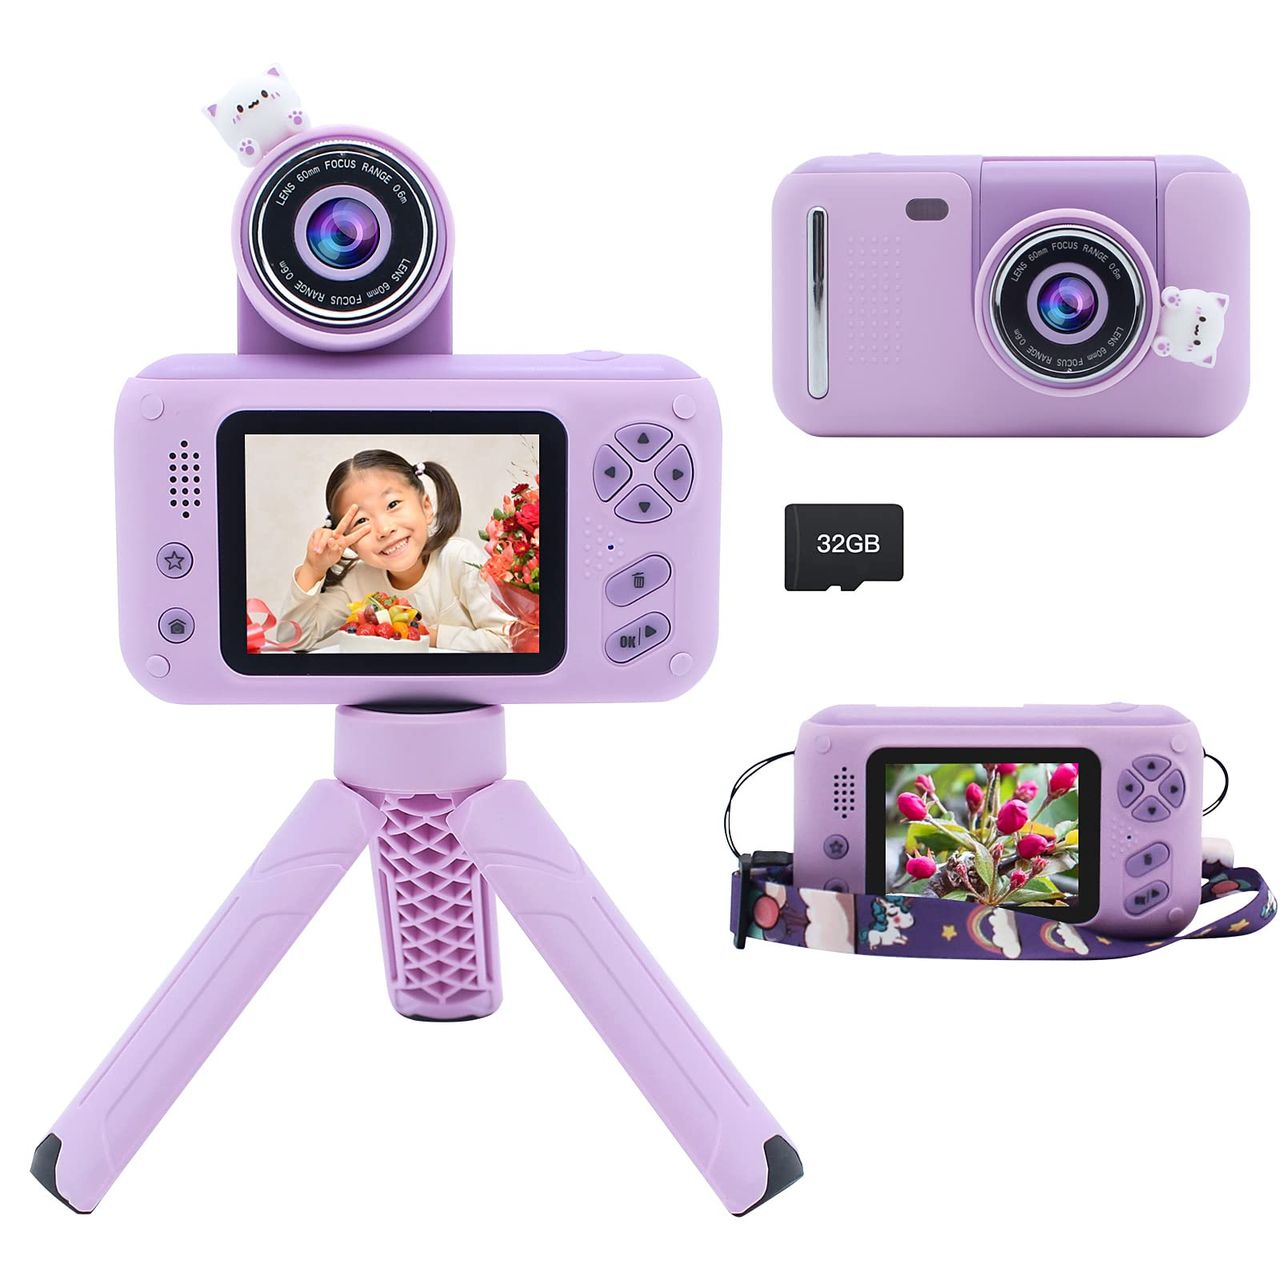 Yukicam キッズカメラ 三脚付き 子供 小学生用 2.4 インチ ディスプレイ デジタルカメラ 初心者 コンパクトカメラおもちゃ お子様へのプレゼント ビデオカメラおもちゃ 180° 回転レンズ付き 3-…